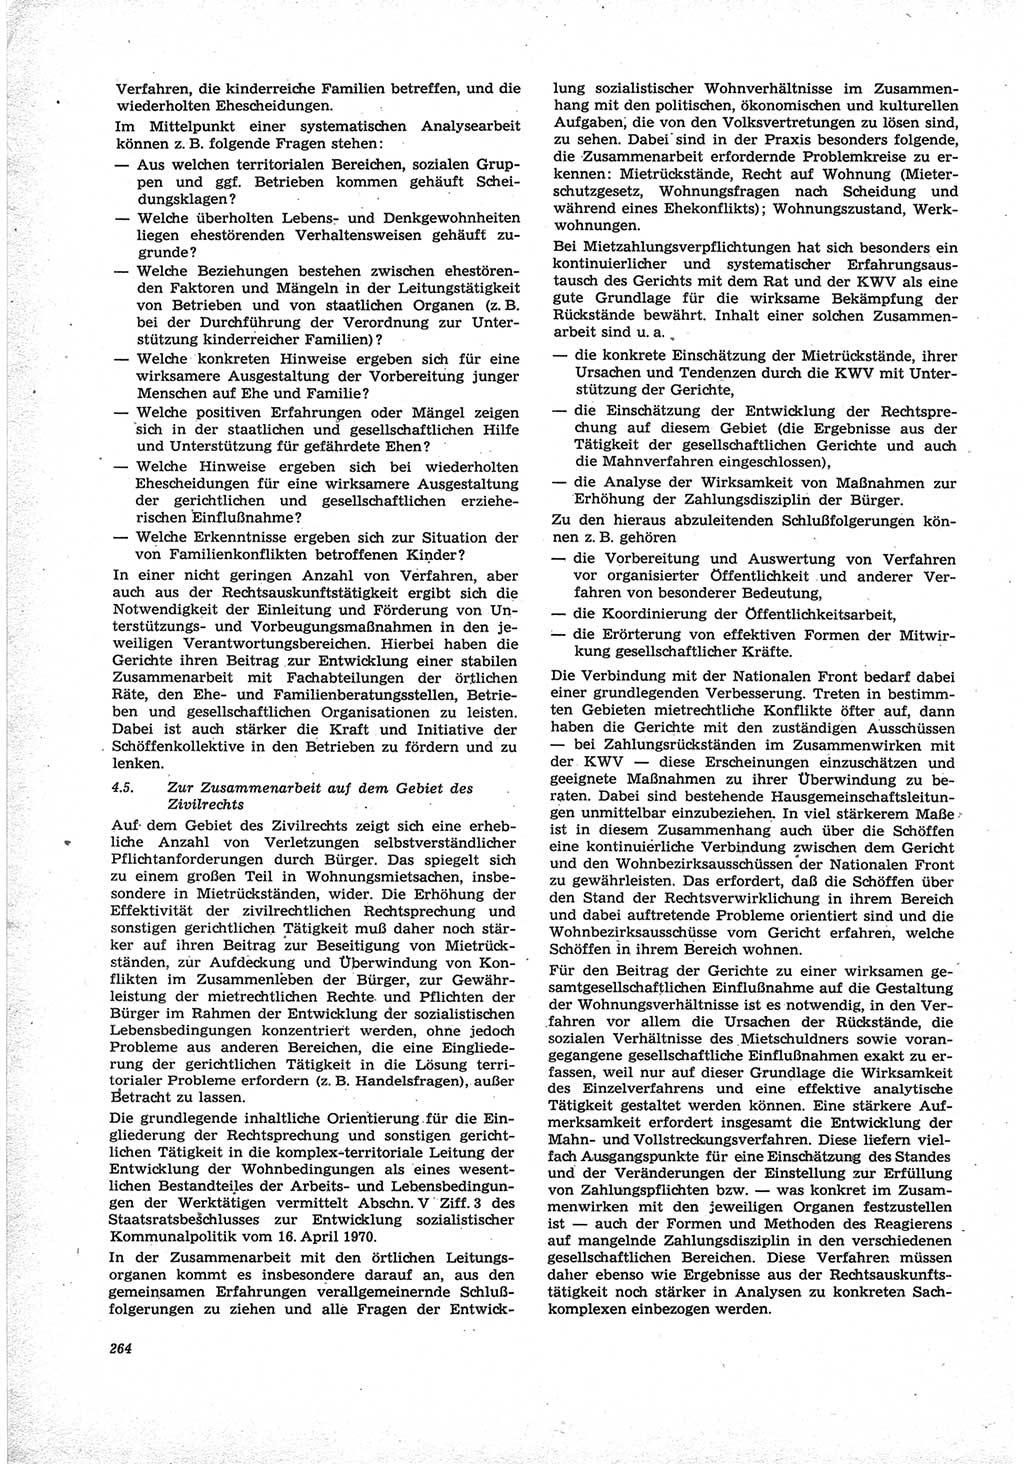 Neue Justiz (NJ), Zeitschrift für Recht und Rechtswissenschaft [Deutsche Demokratische Republik (DDR)], 25. Jahrgang 1971, Seite 264 (NJ DDR 1971, S. 264)